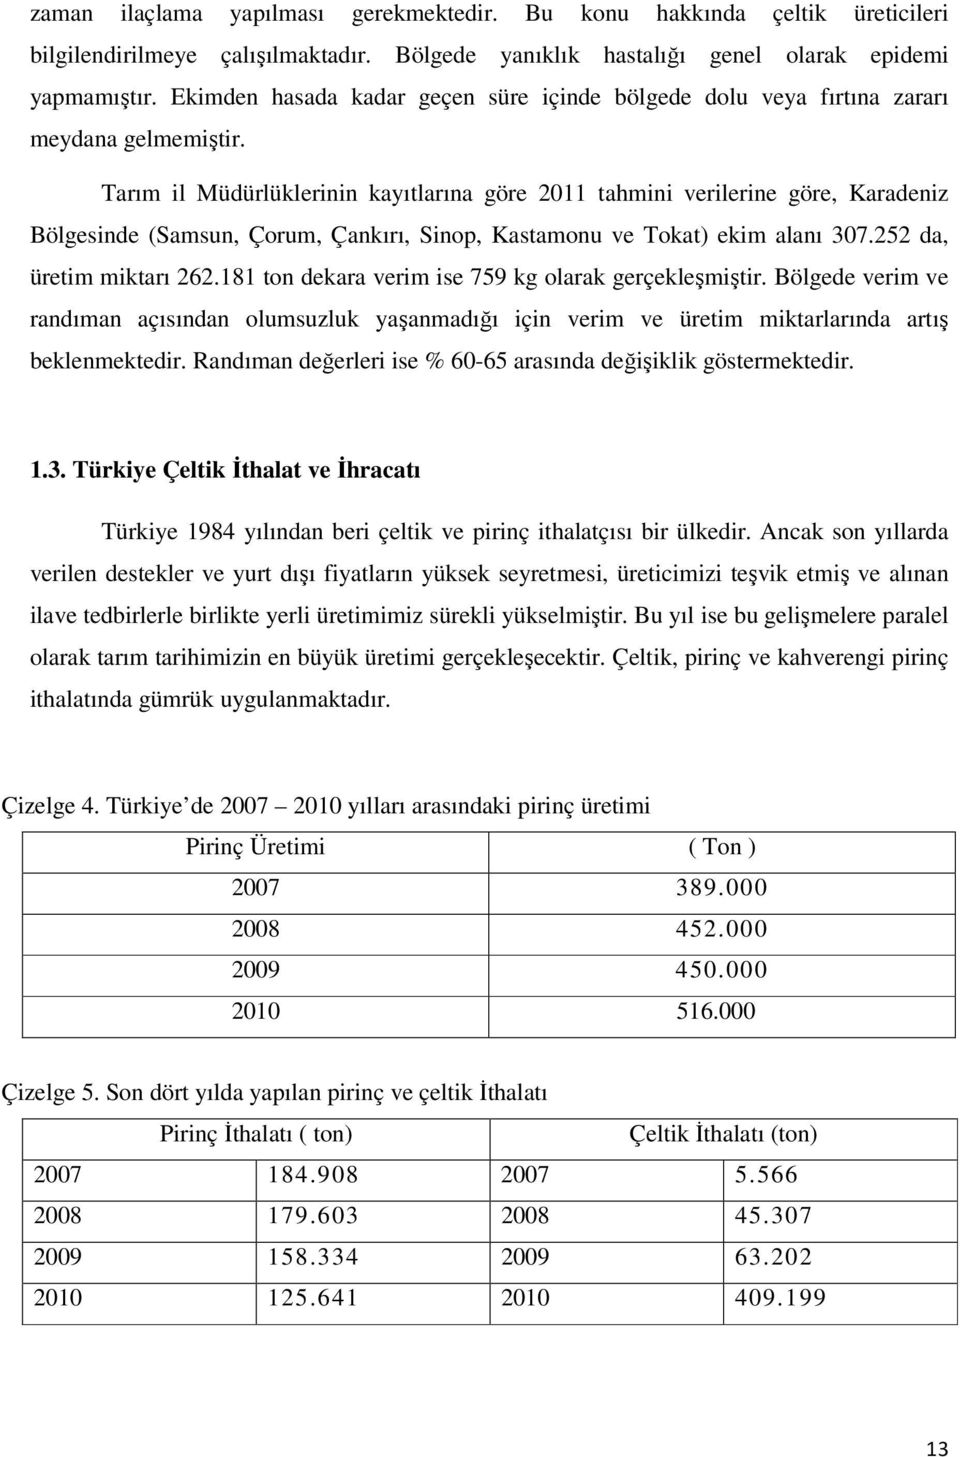 Tarım il Müdürlüklerinin kayıtlarına göre 2011 tahmini verilerine göre, Karadeniz Bölgesinde (Samsun, Çorum, Çankırı, Sinop, Kastamonu ve Tokat) ekim alanı 307.252 da, üretim miktarı 262.